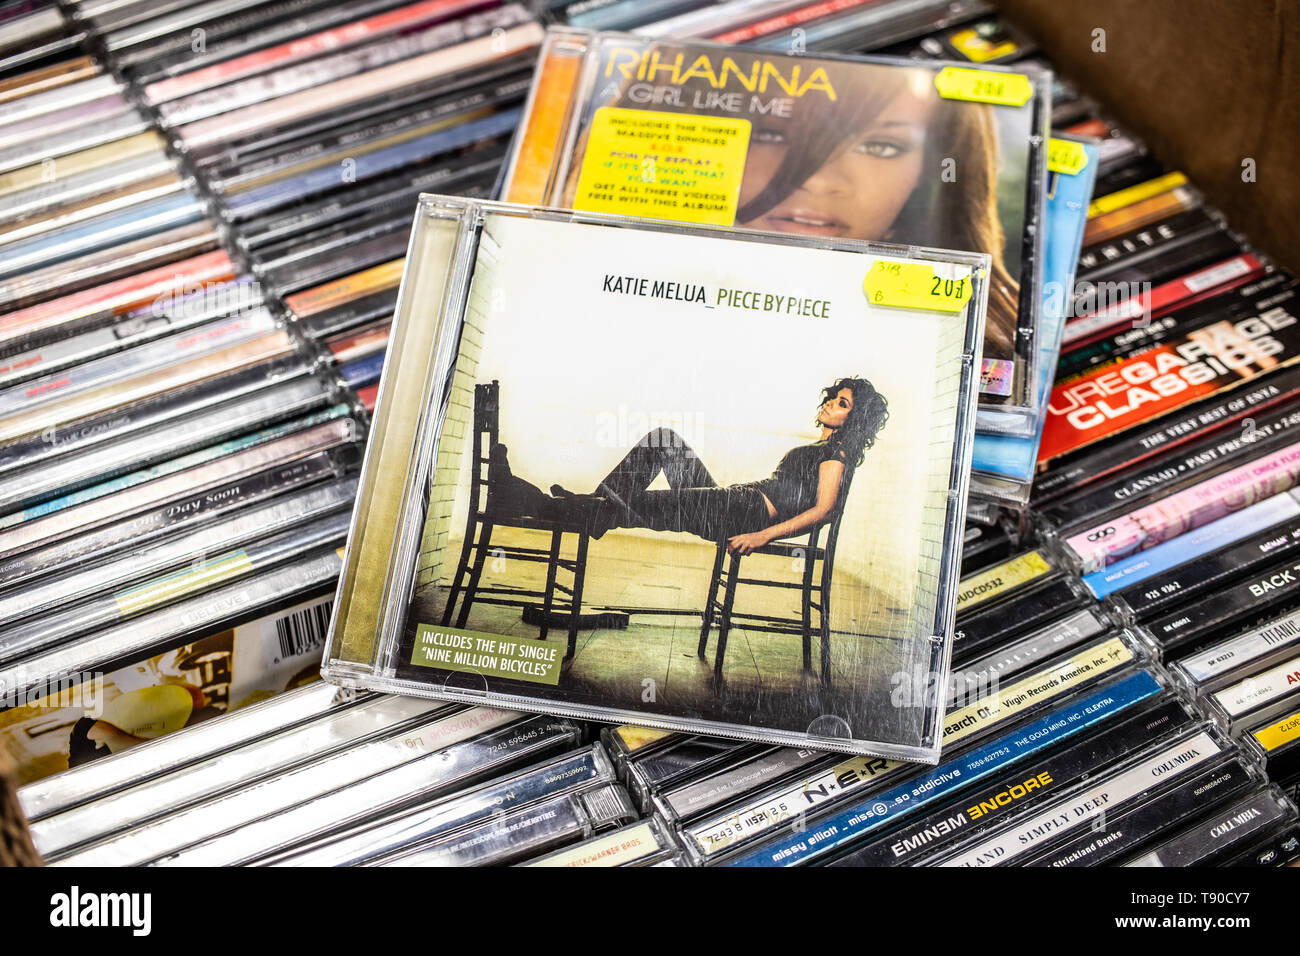 Nadarzyn, Polonia, 11 Maggio 2019: Katie Melua CD album pezzo per pezzo 2005 sul display per la vendita, British-Georgian famoso cantante e cantautore, cd Foto Stock